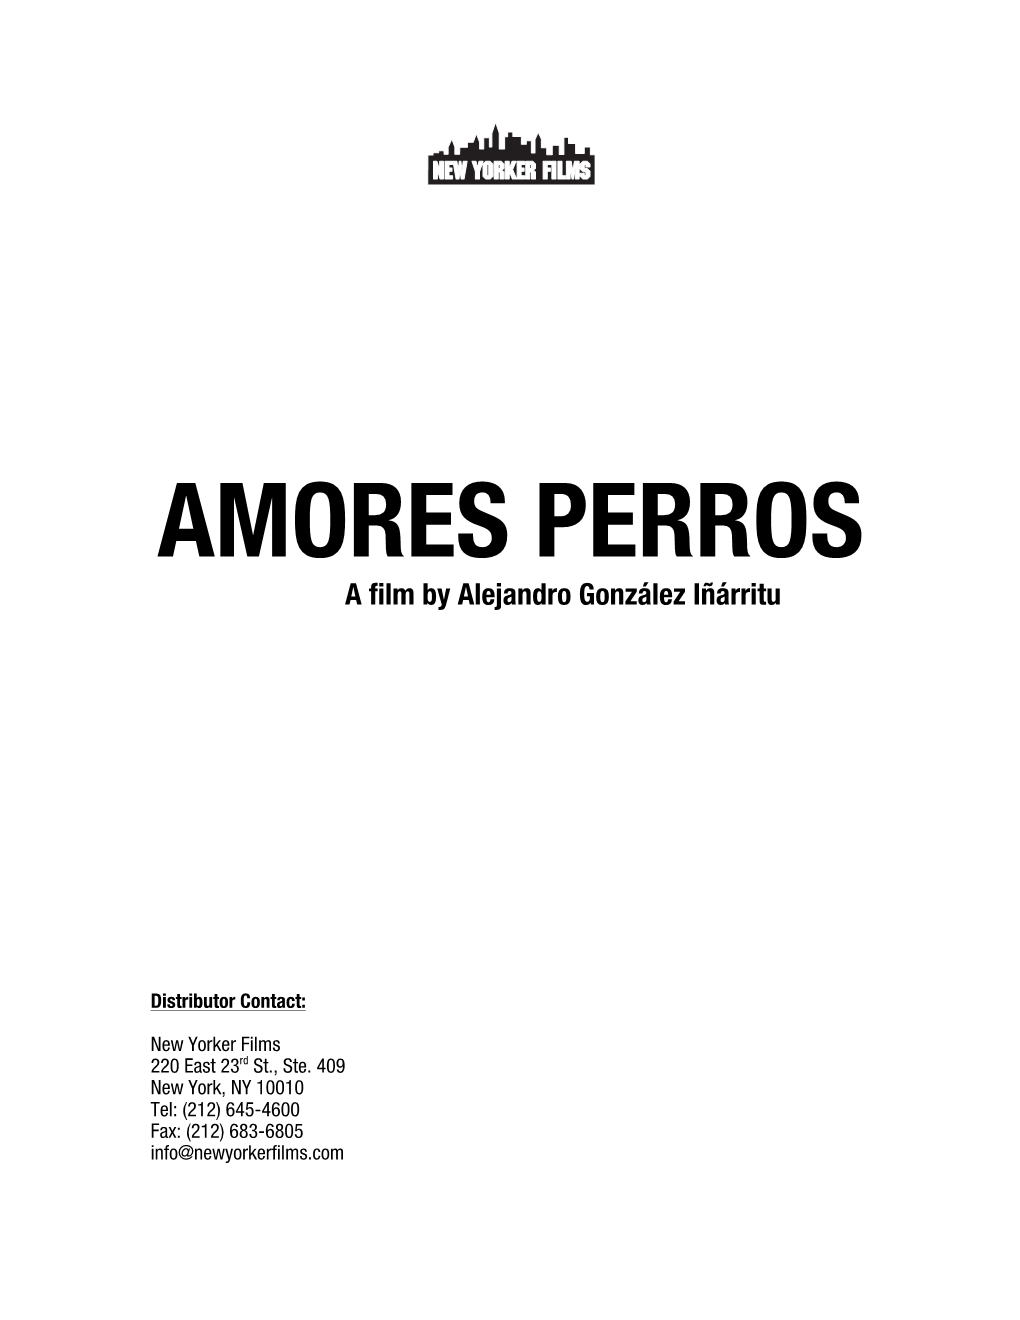 AMORES PERROS a Film by Alejandro González Iñárritu